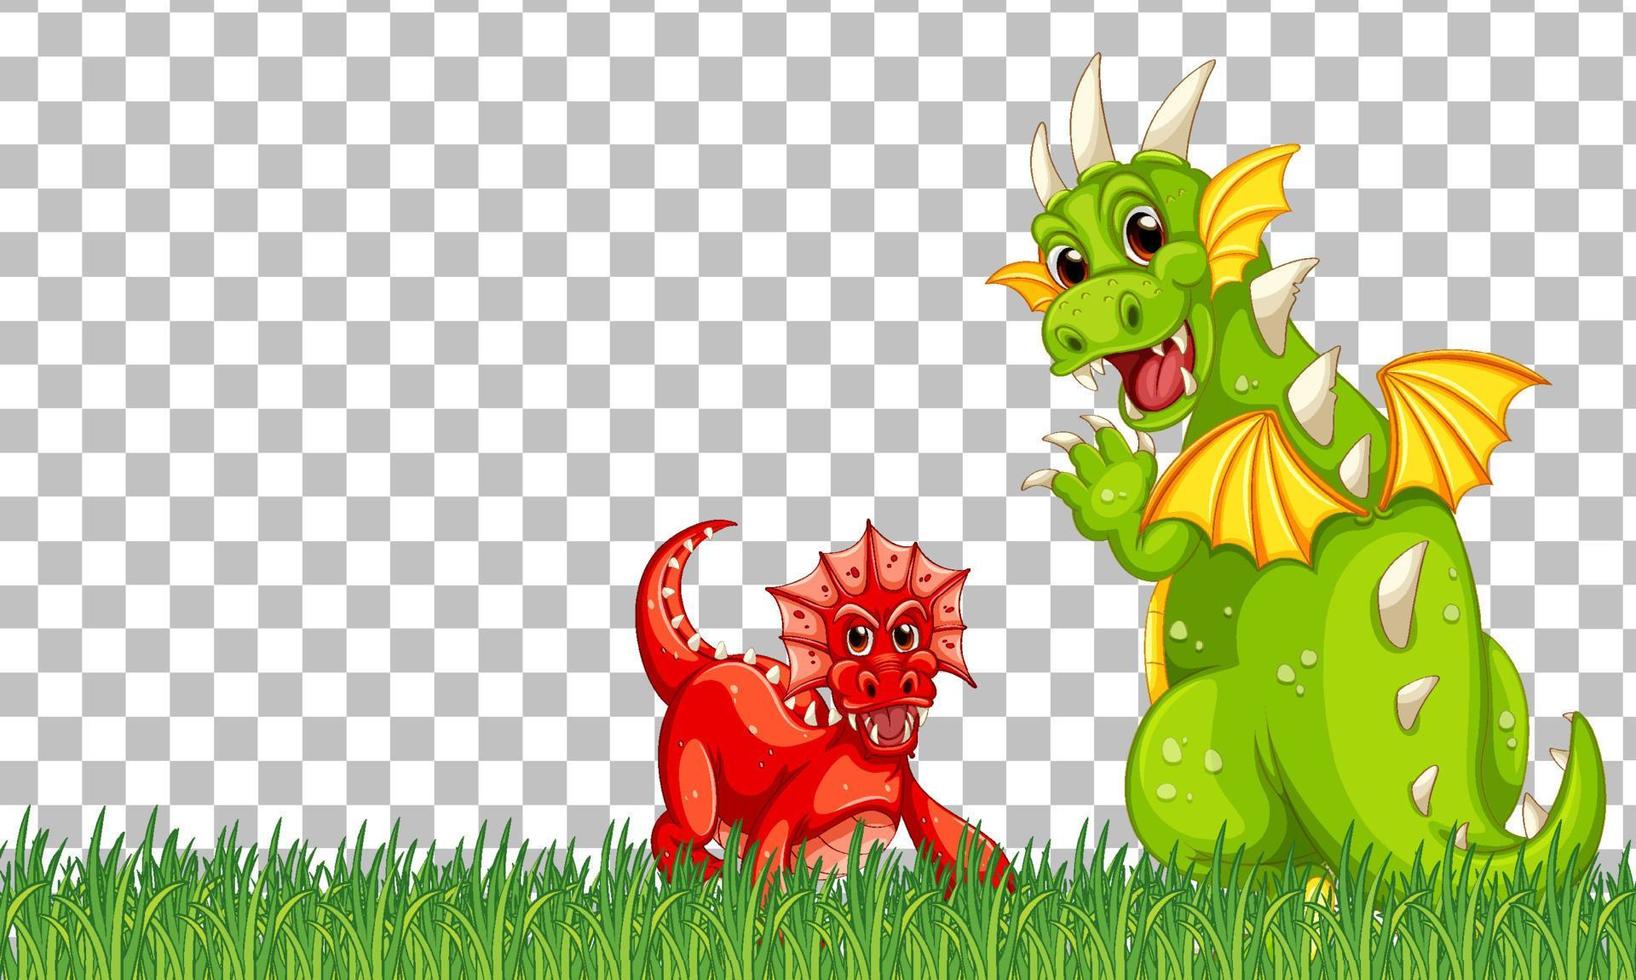 Drachen- und Babyzeichentrickfigur auf grünem Gras vektor